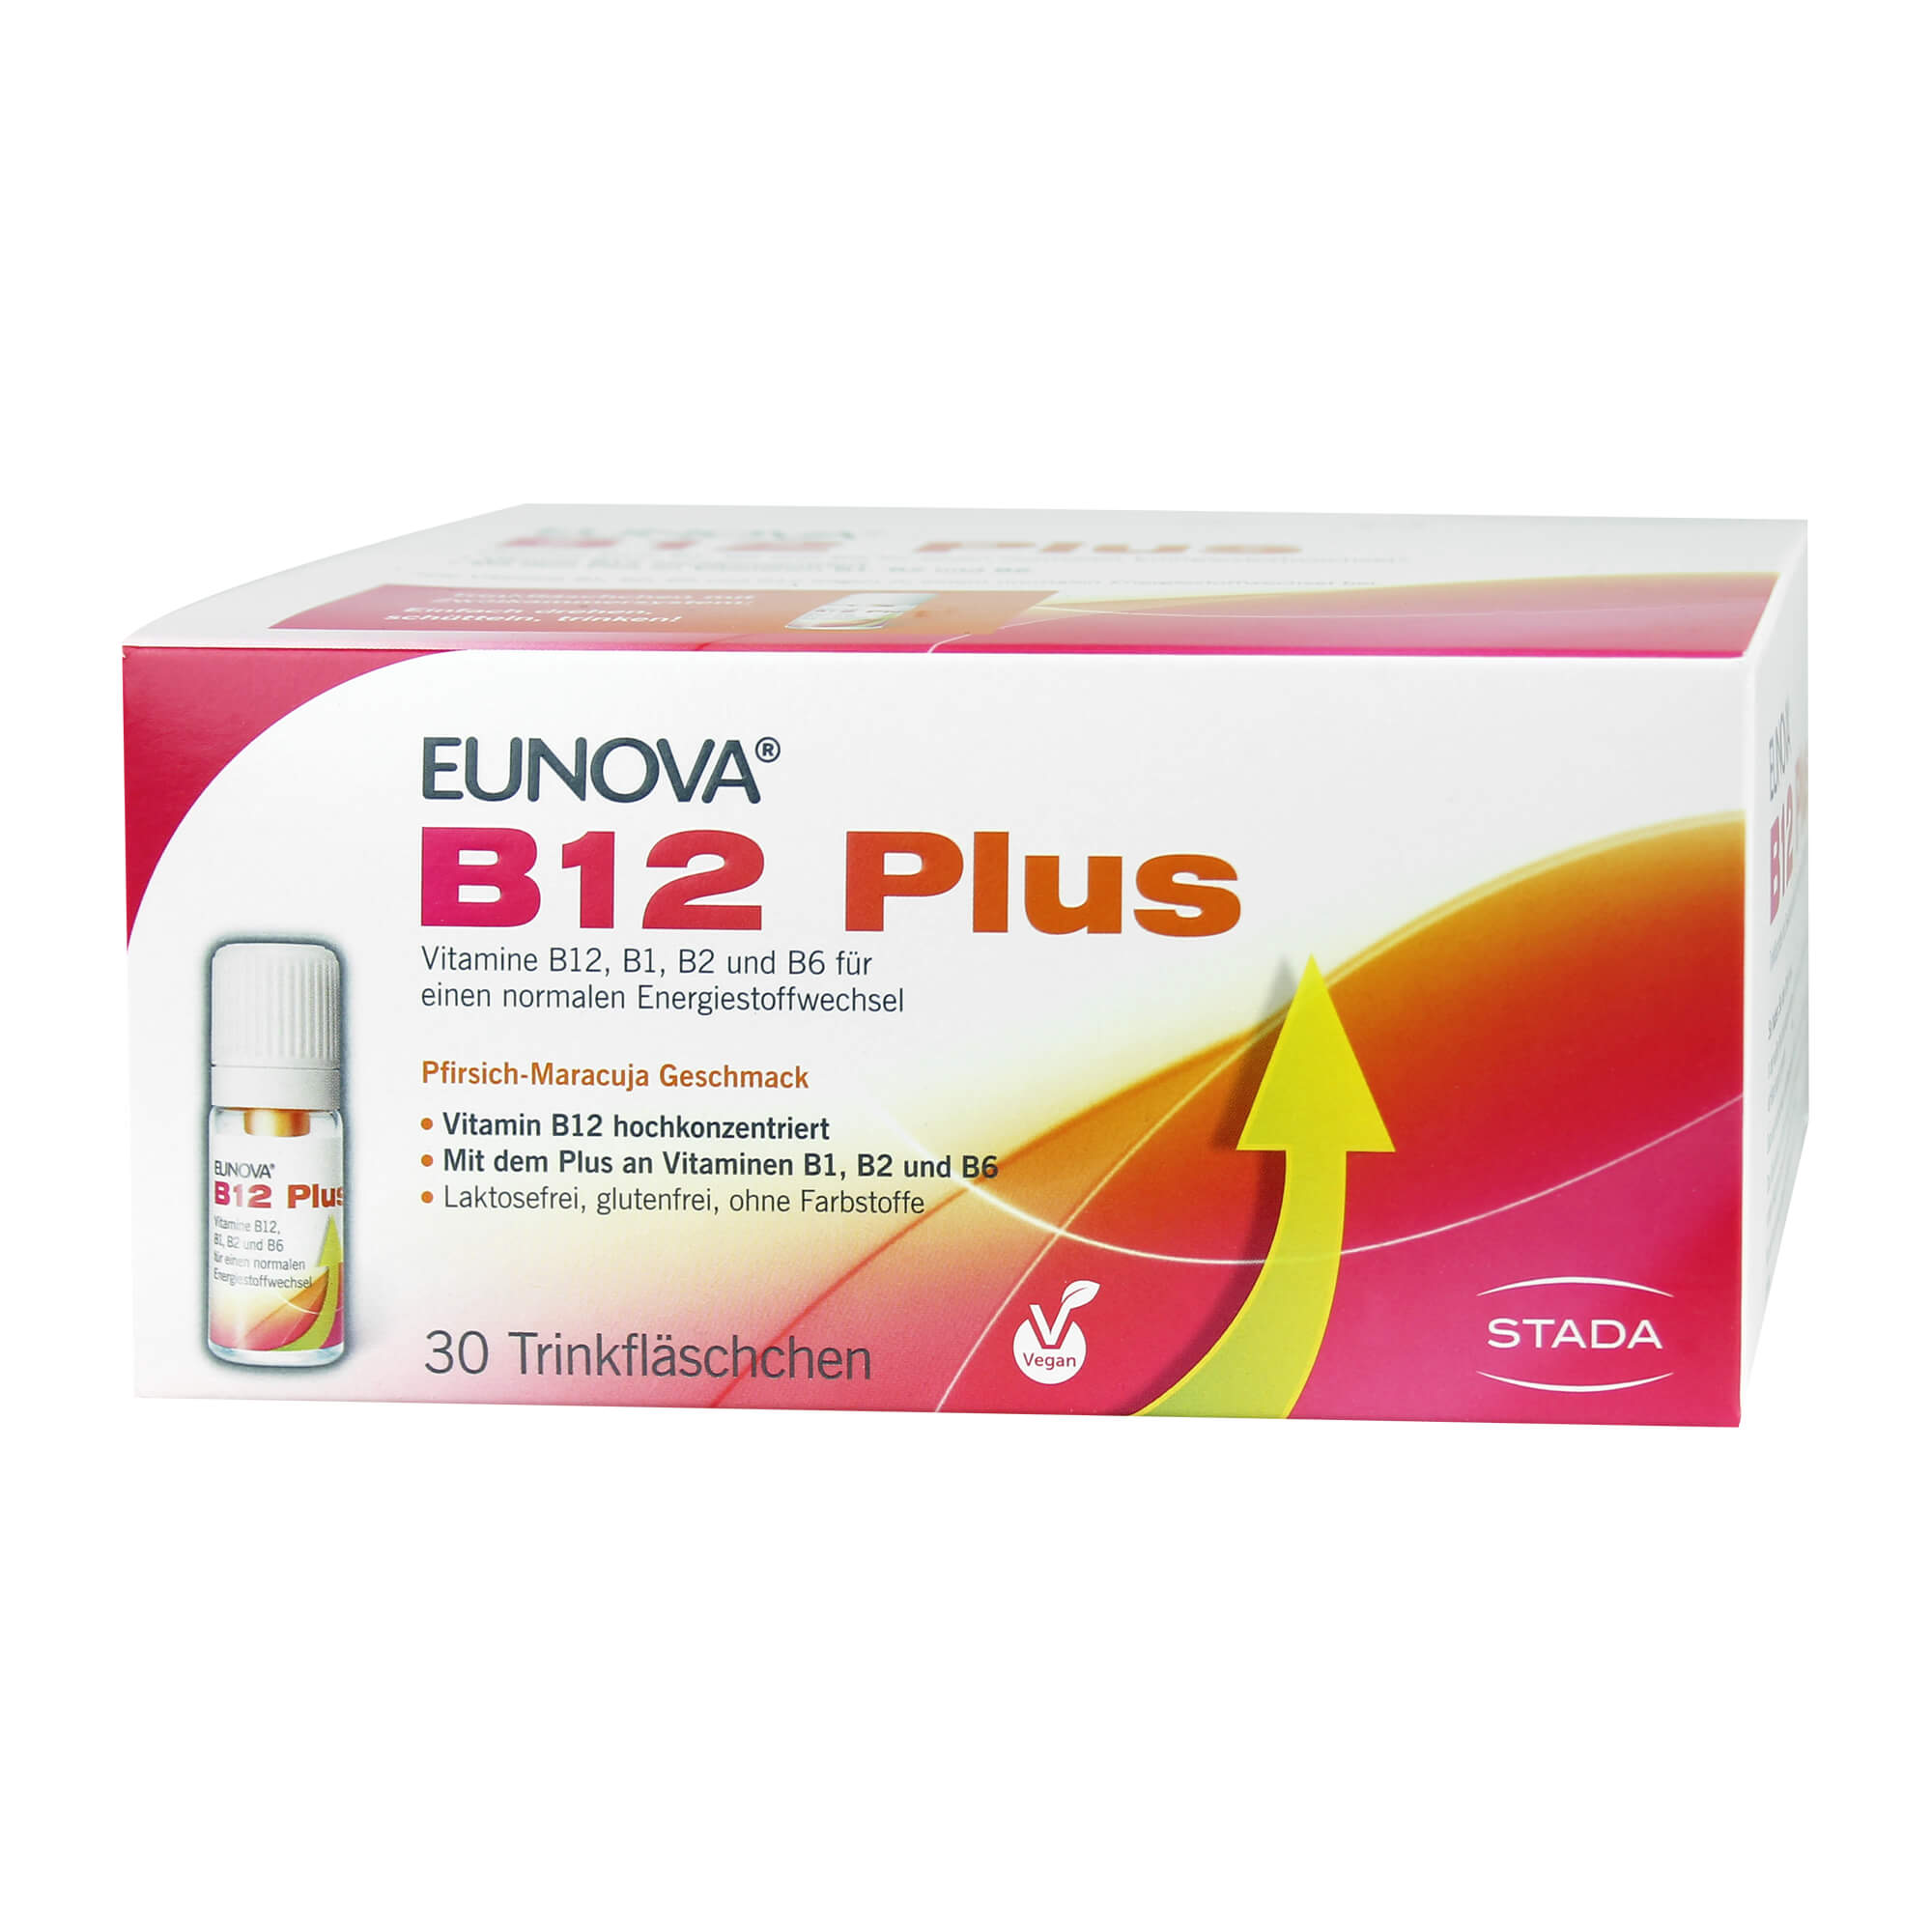 Nahrungsergänzungsmittel mit Vitaminen B12, B1, B2 und B6. Mit Pfirsich-Maracuja Geschmack.